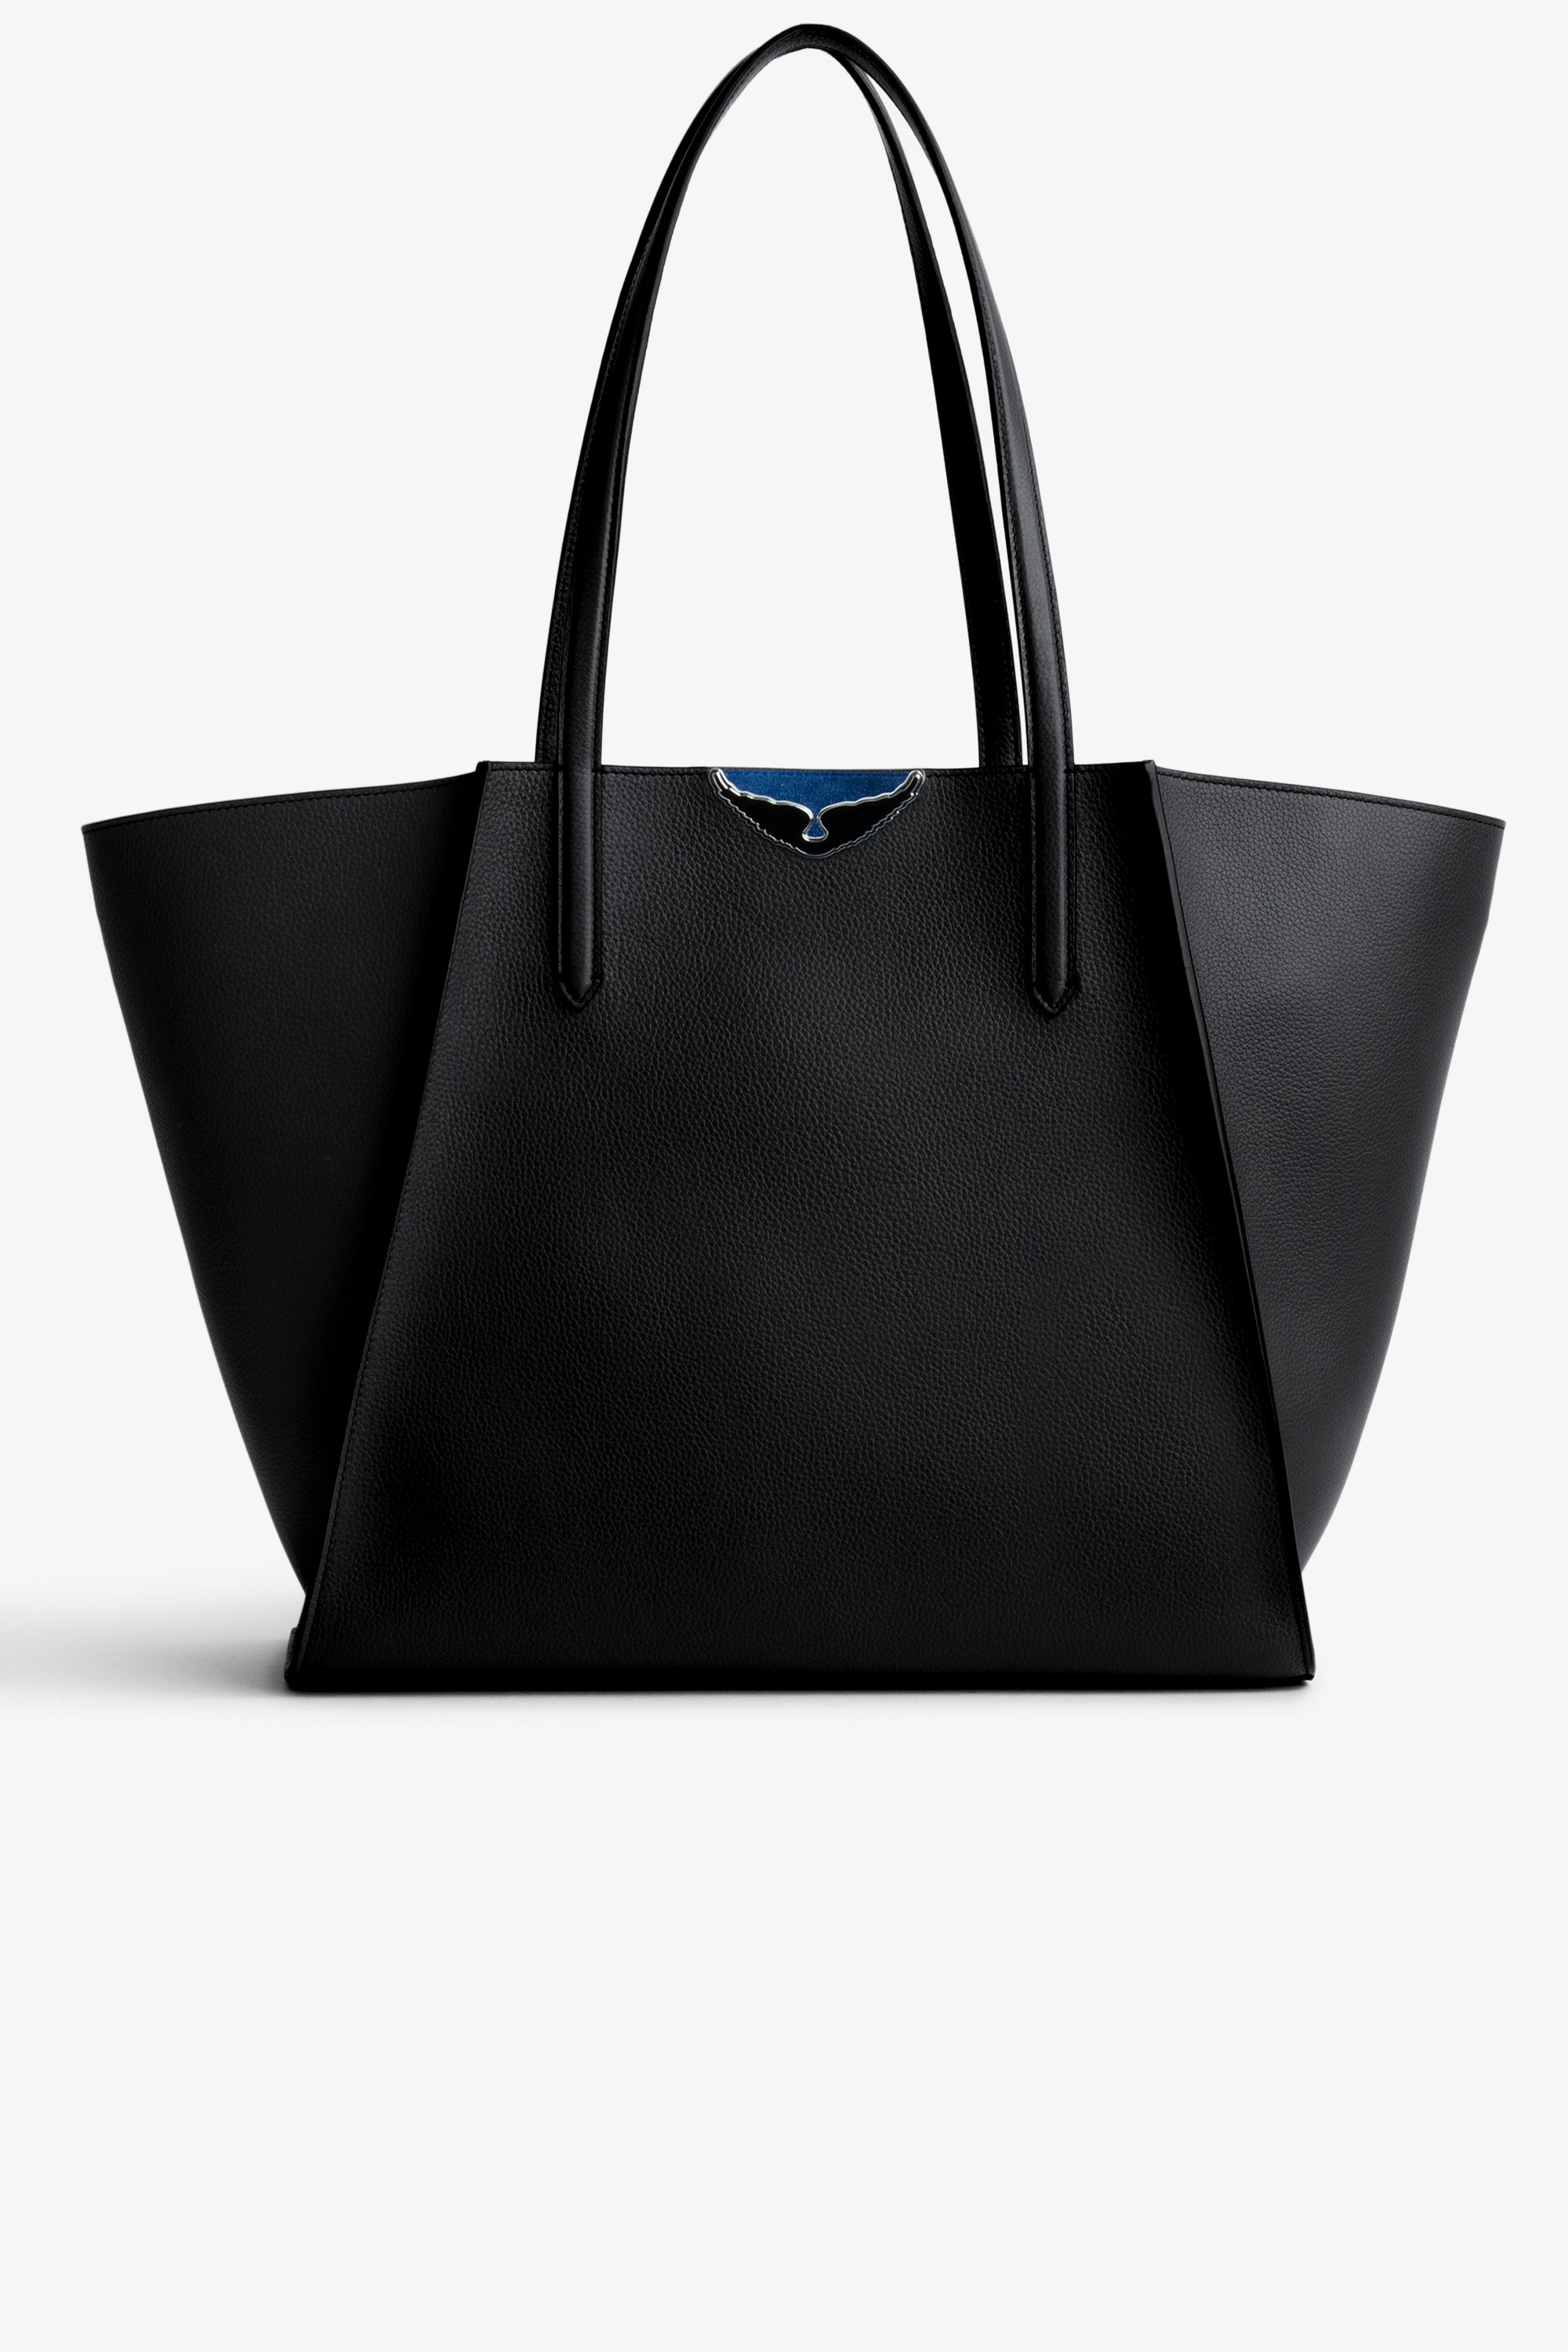 Tasche Le Borderline Damen-Shopper zum Wenden aus schwarzem, genarbtem Leder und blauem Veloursleder mit schwarz lackierten Flügeln